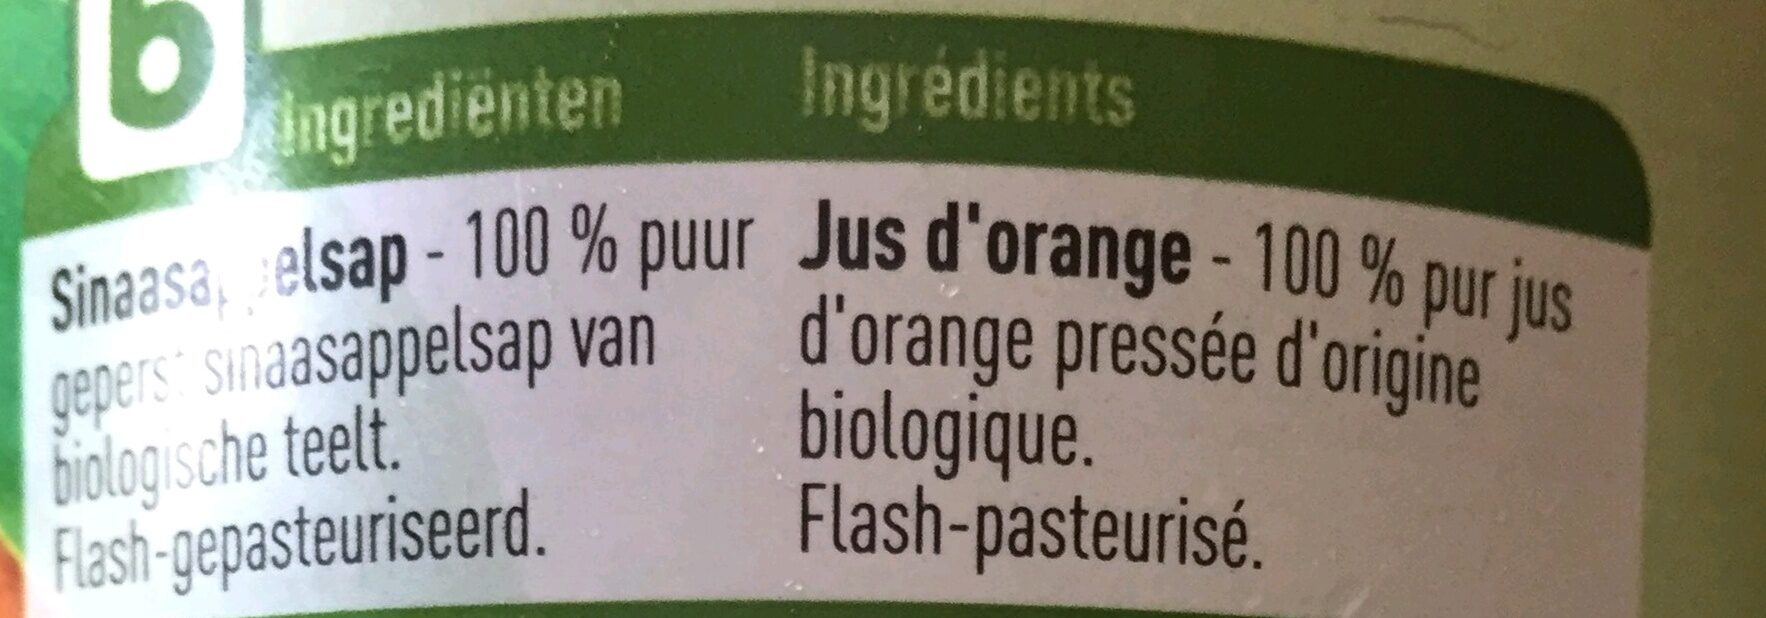 Jus d'orange - Ingrediënten